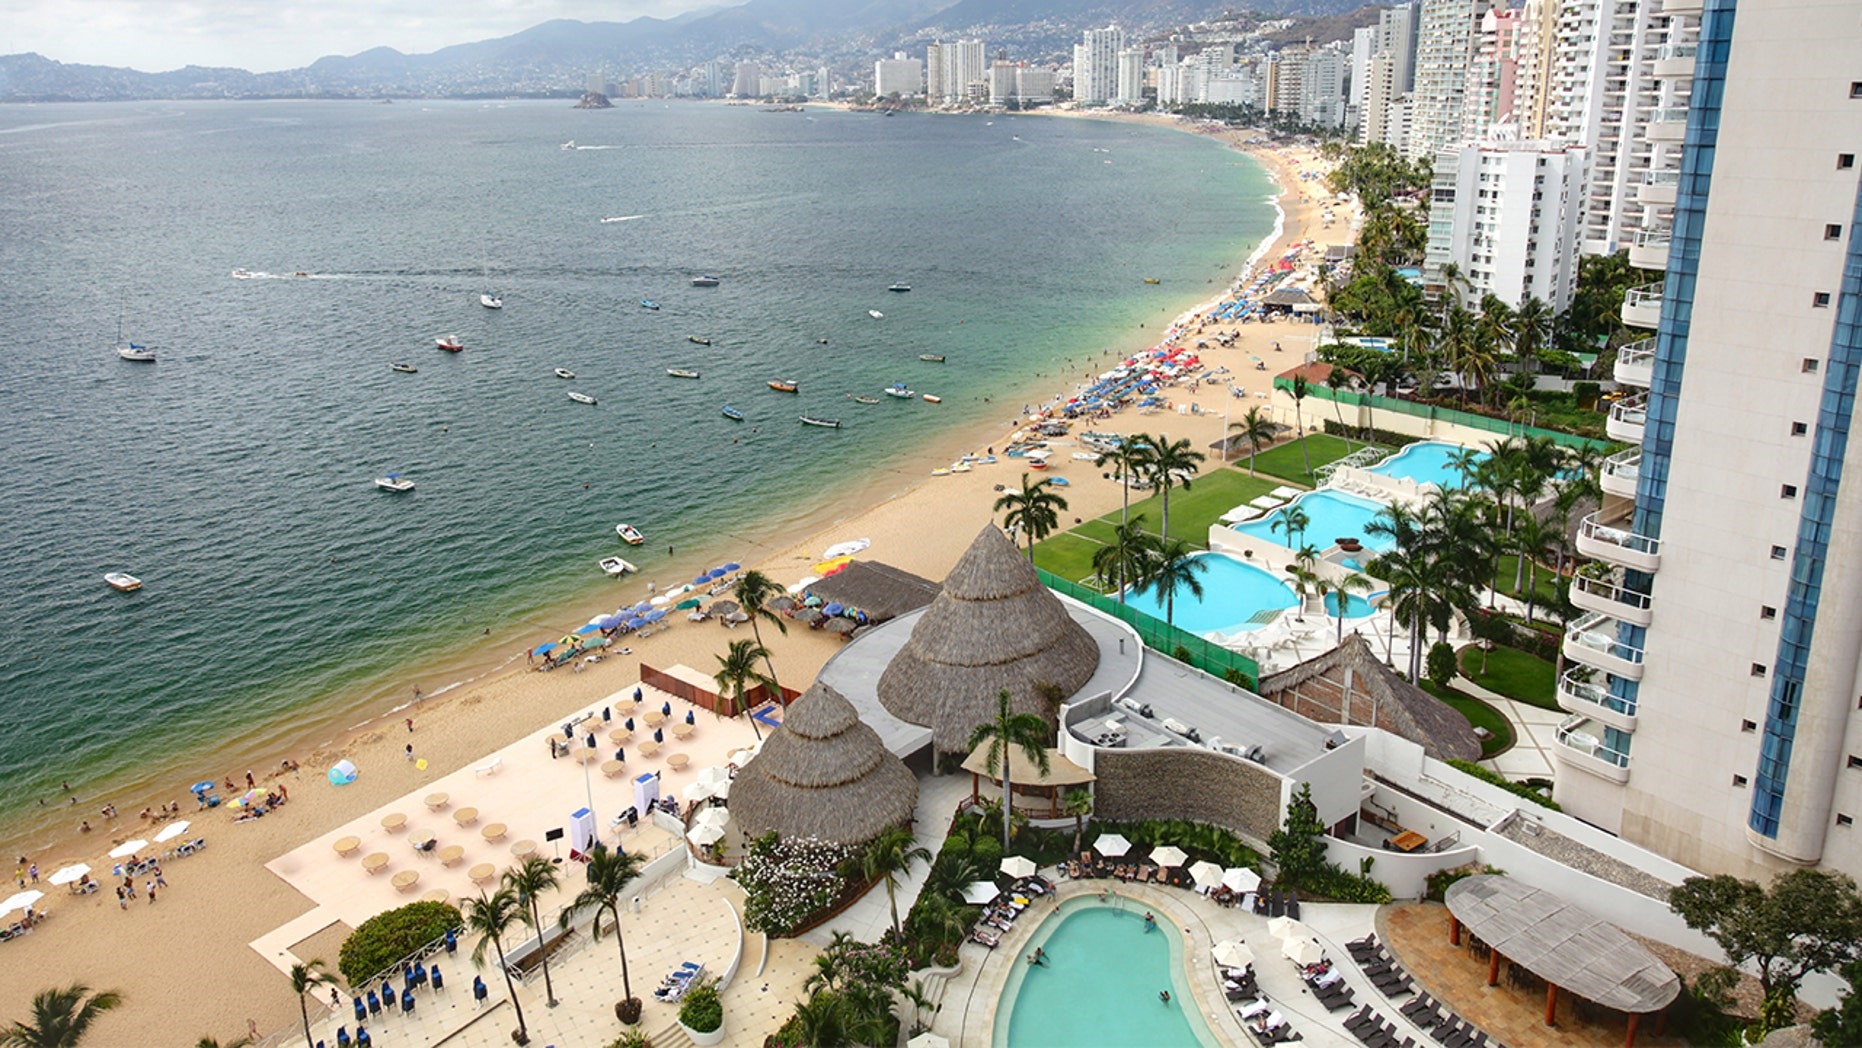 el-equipo-fotográfico-ideal-para-capturar-acapulco